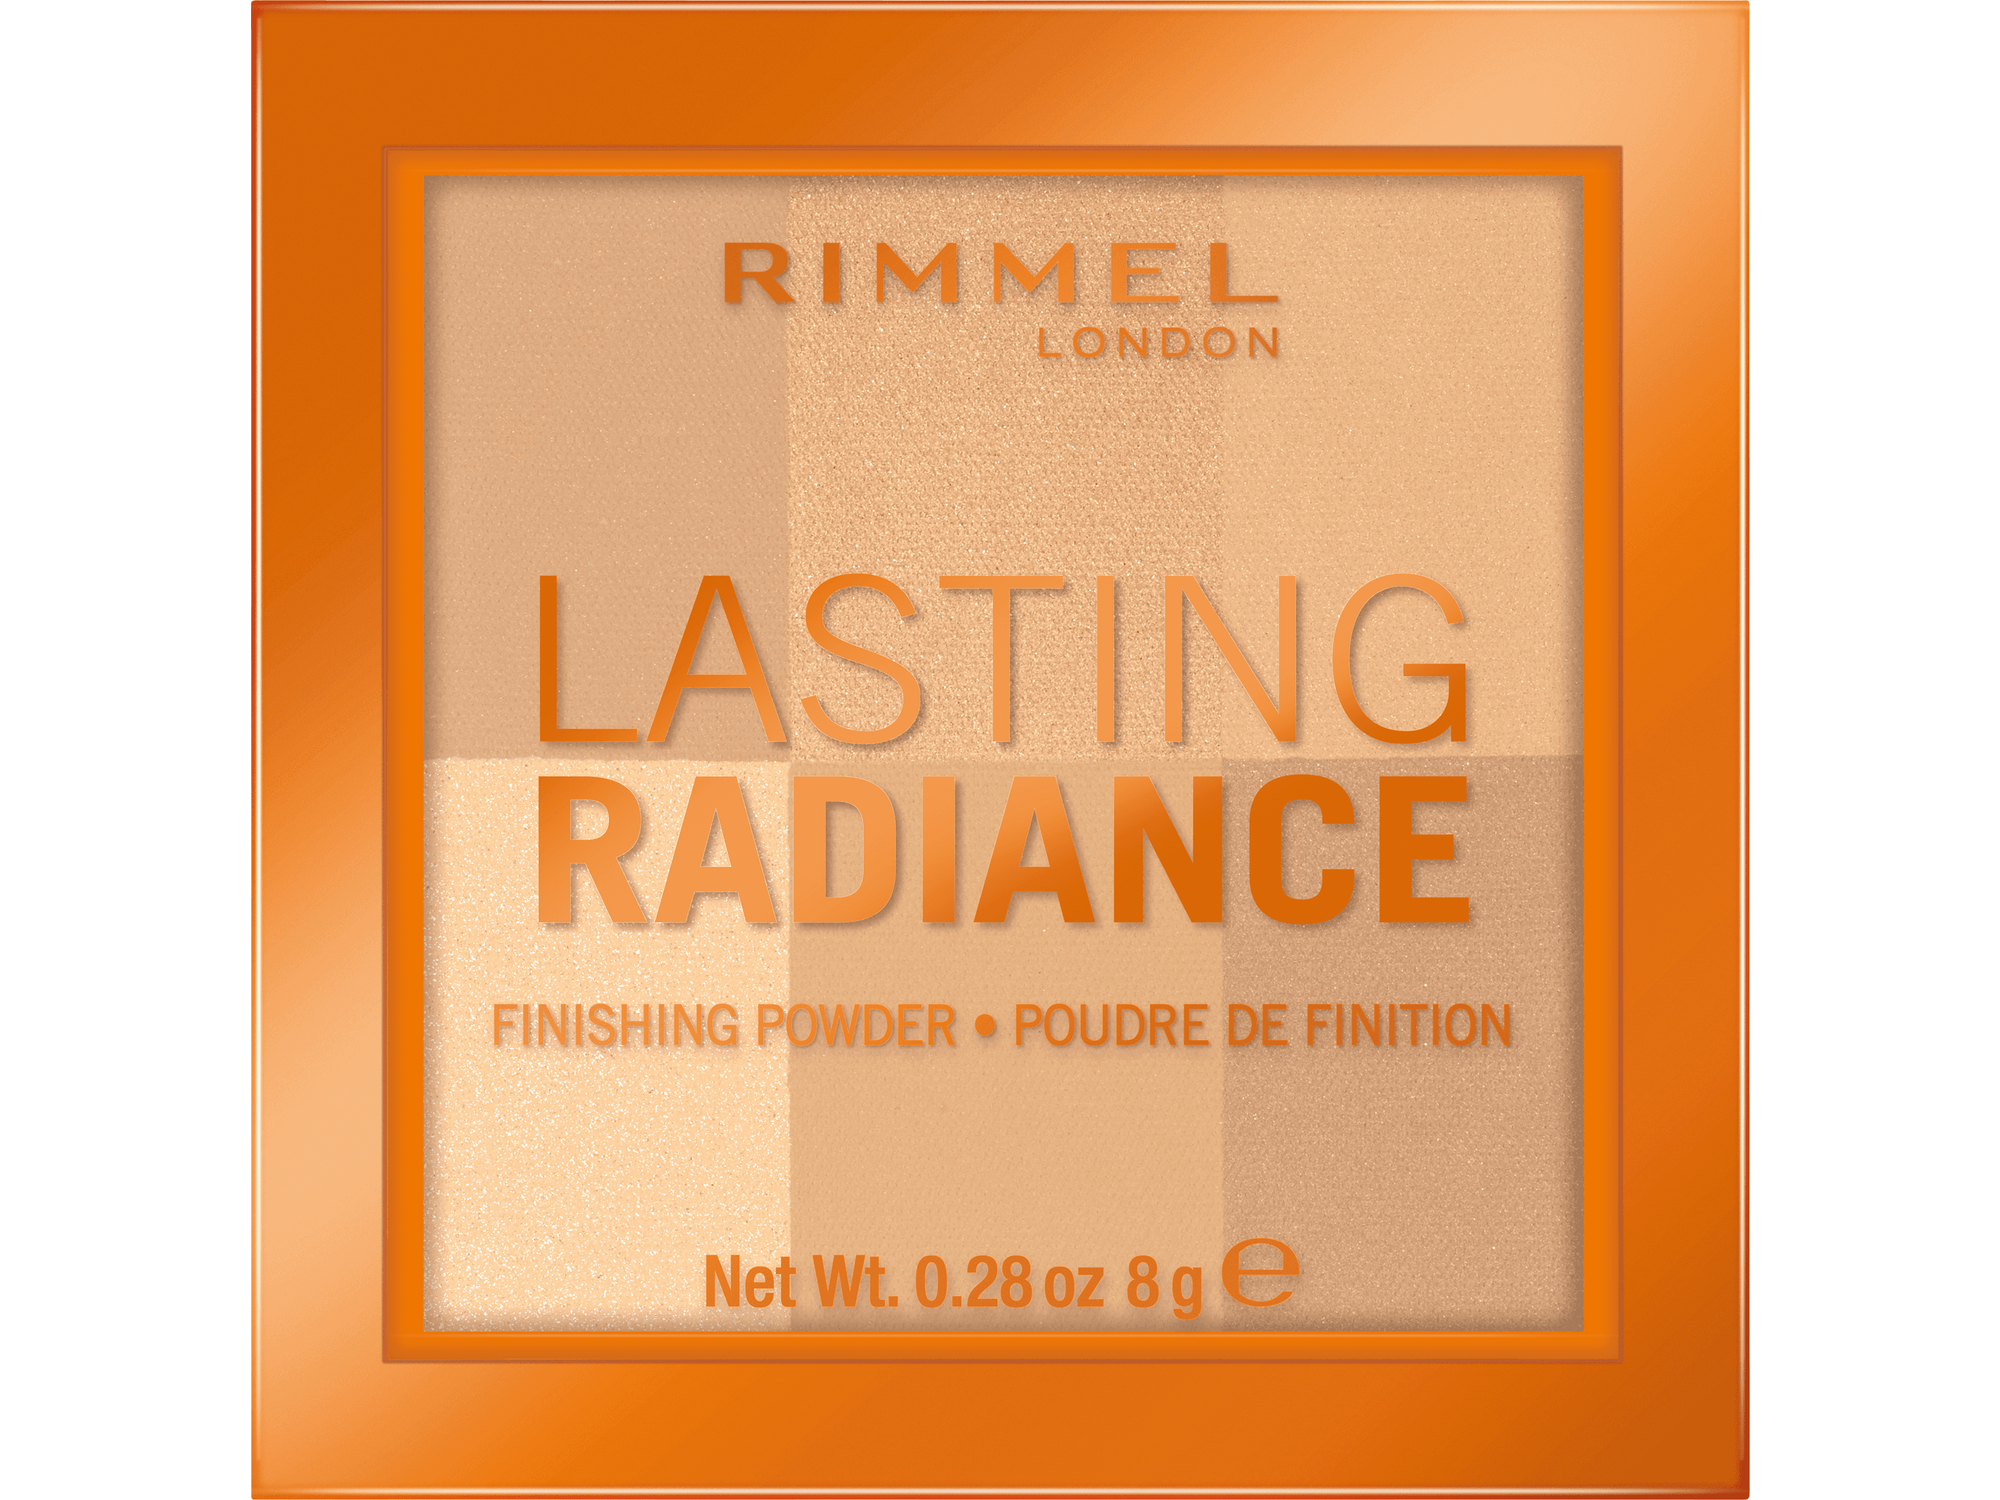 RIMMEL puder v kamnu Lasting Radiance 01 Ivory